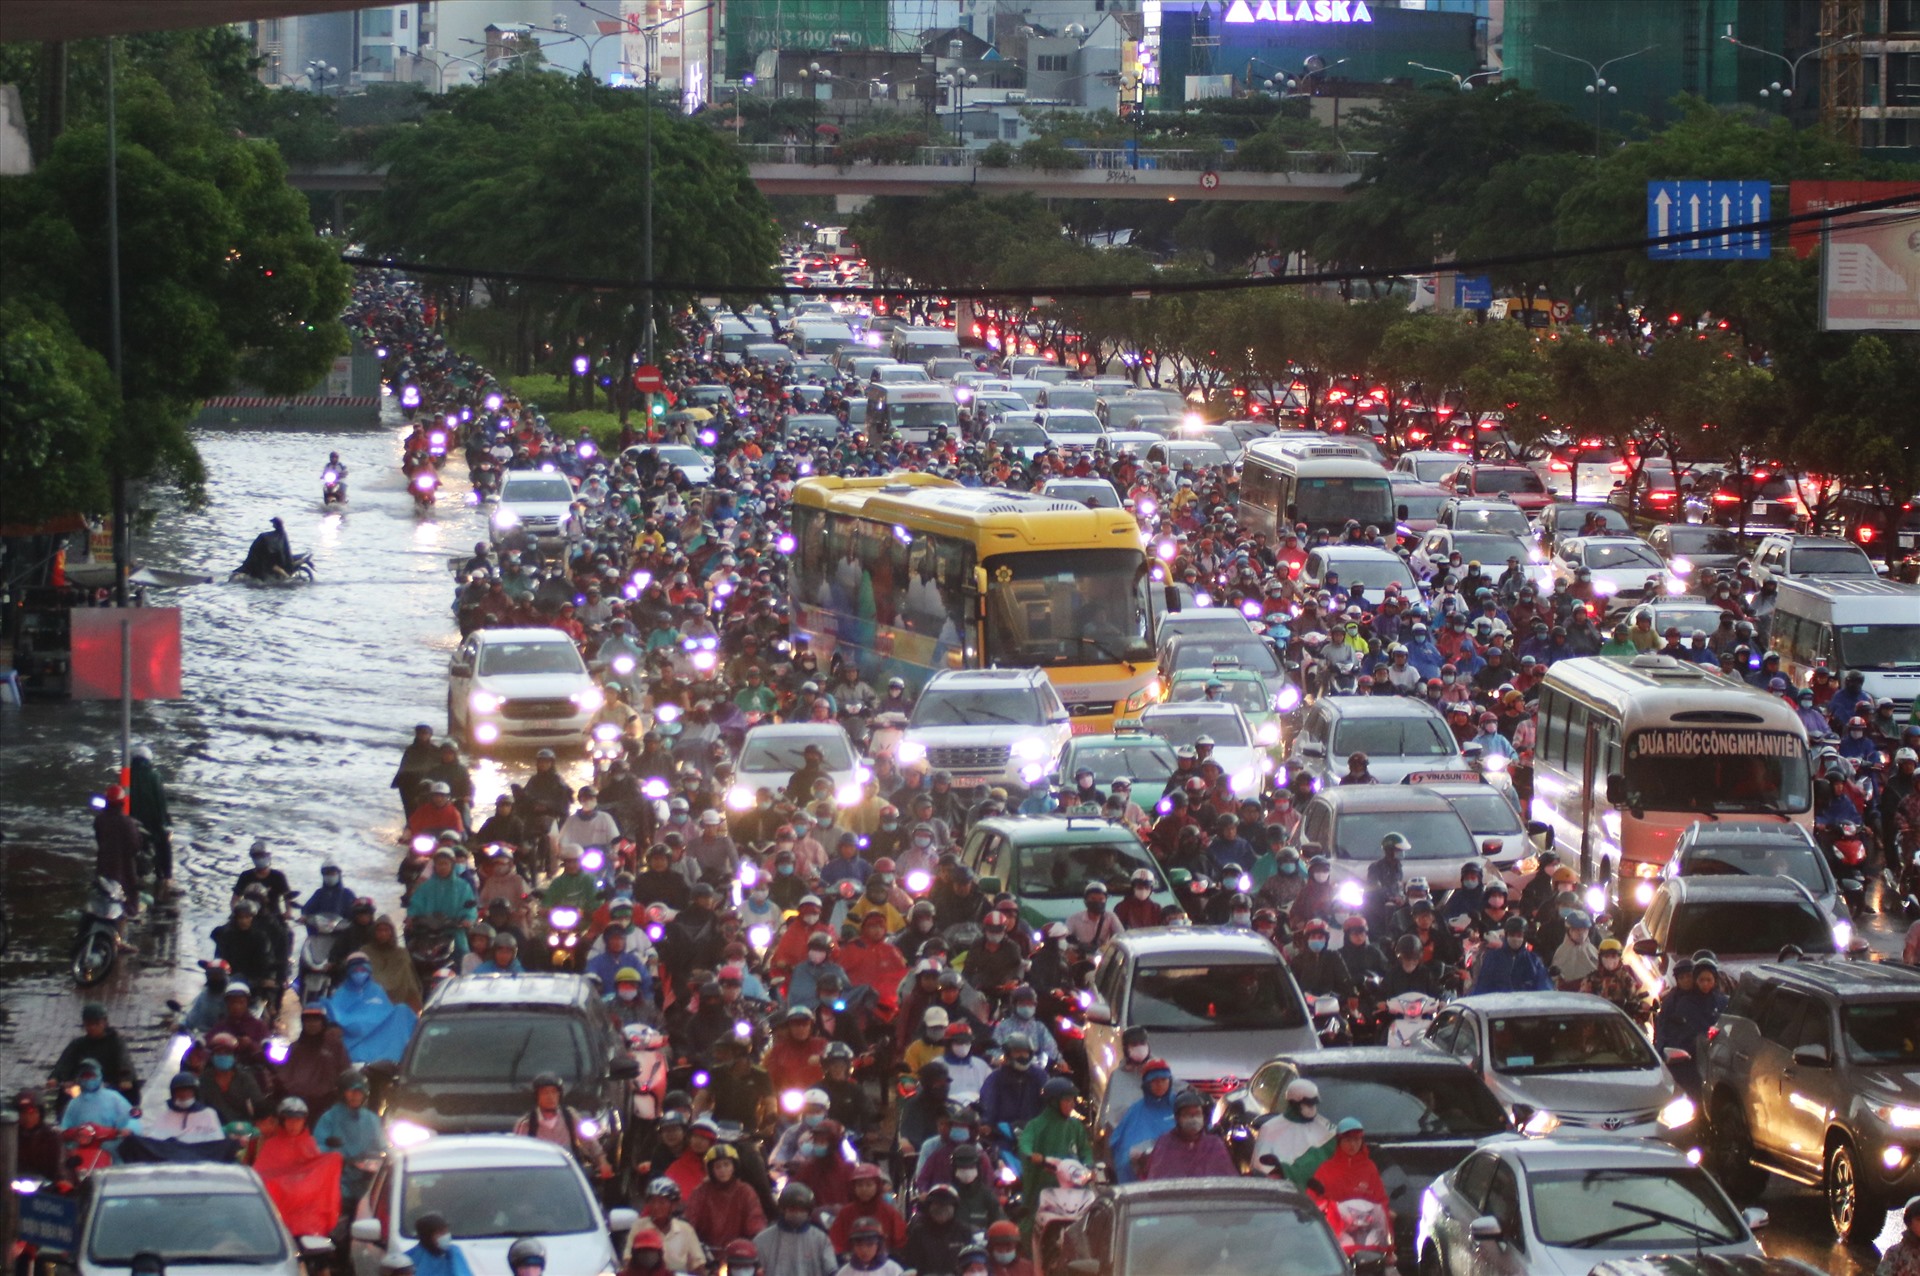 Tại nút giao chân cầu Sài Gòn, giao thông tắc nghẽn khi dòng xe từ 2 đường Điện Biên Phủ và Nguyễn Hữu Cảnh liên tục dồn tới. Hàng ngàn người bơ phờ bởi kẹt xe, ngập nước.